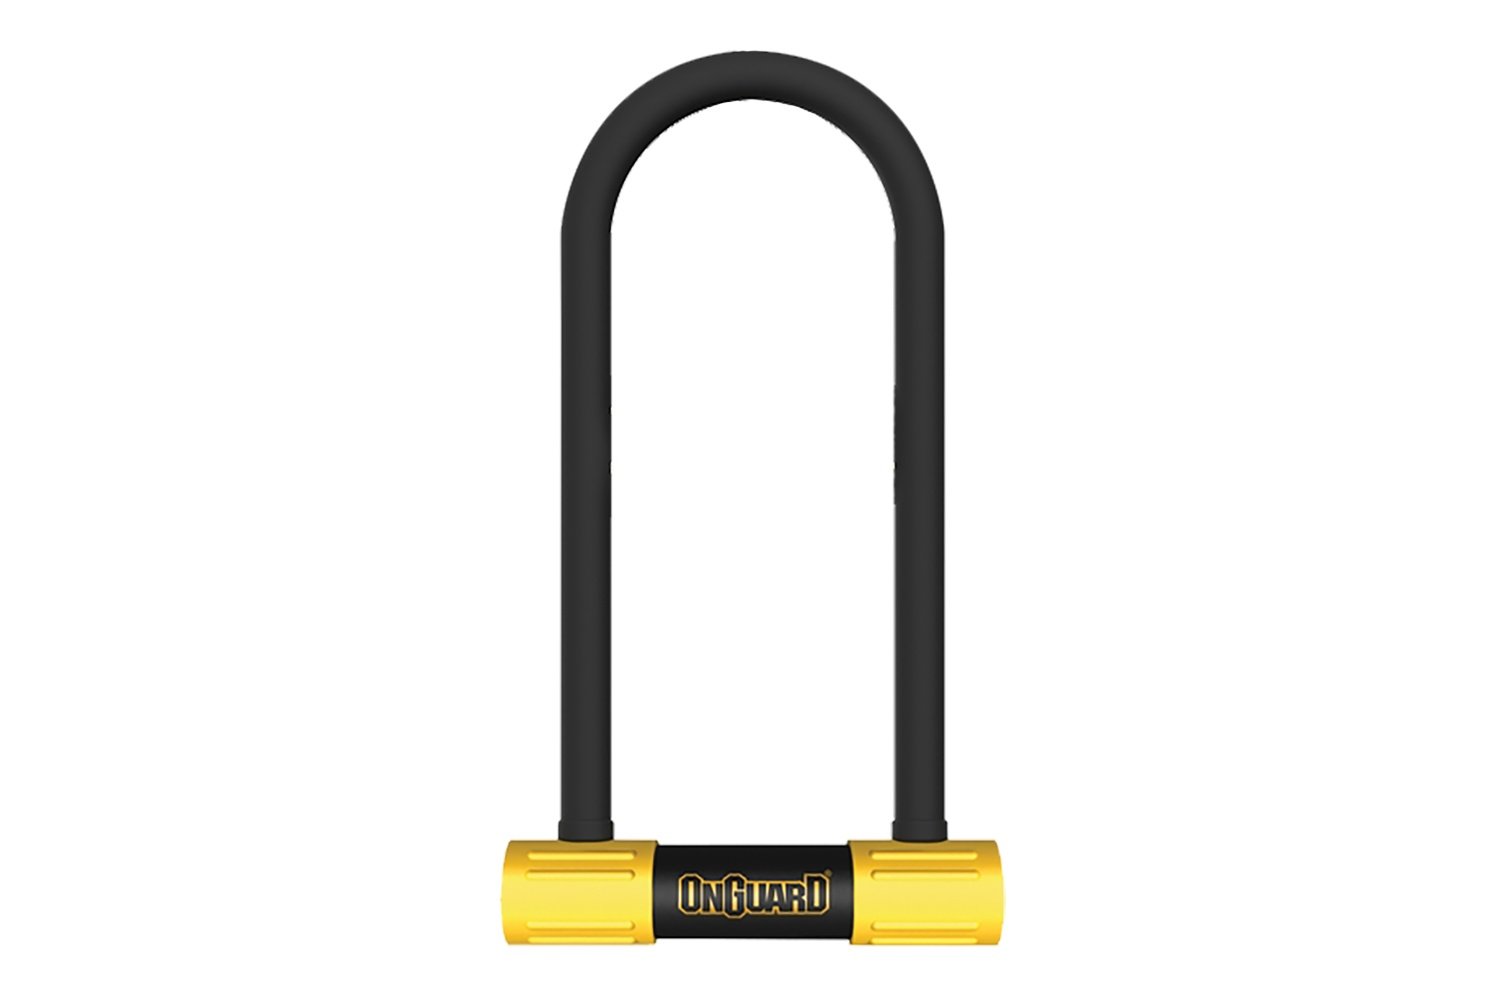 Велосипедный замок Onguard Smart Alarm, U-lock, на ключ, 100 x 258мм, 8268 велосипедный замок bbb u lock на ключ с креплением 250 x 170 мм bbl 28